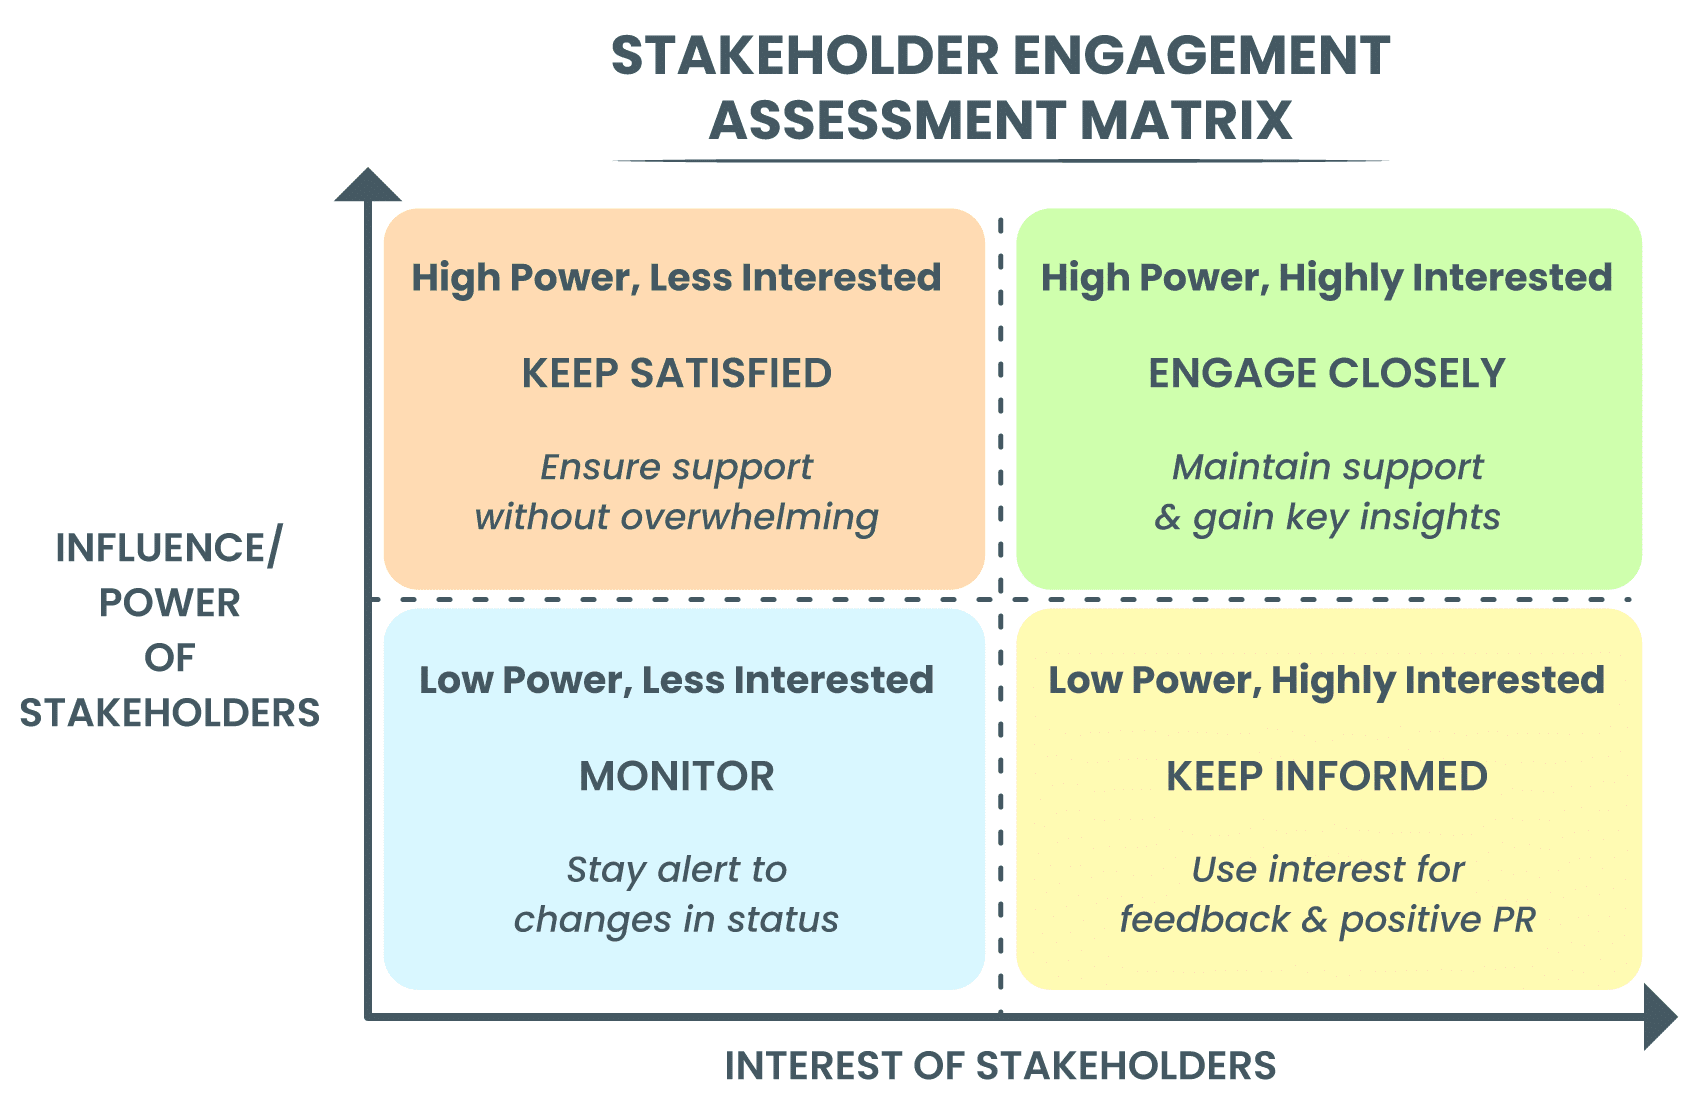 Stakeholder Engagement Assessment Matrix